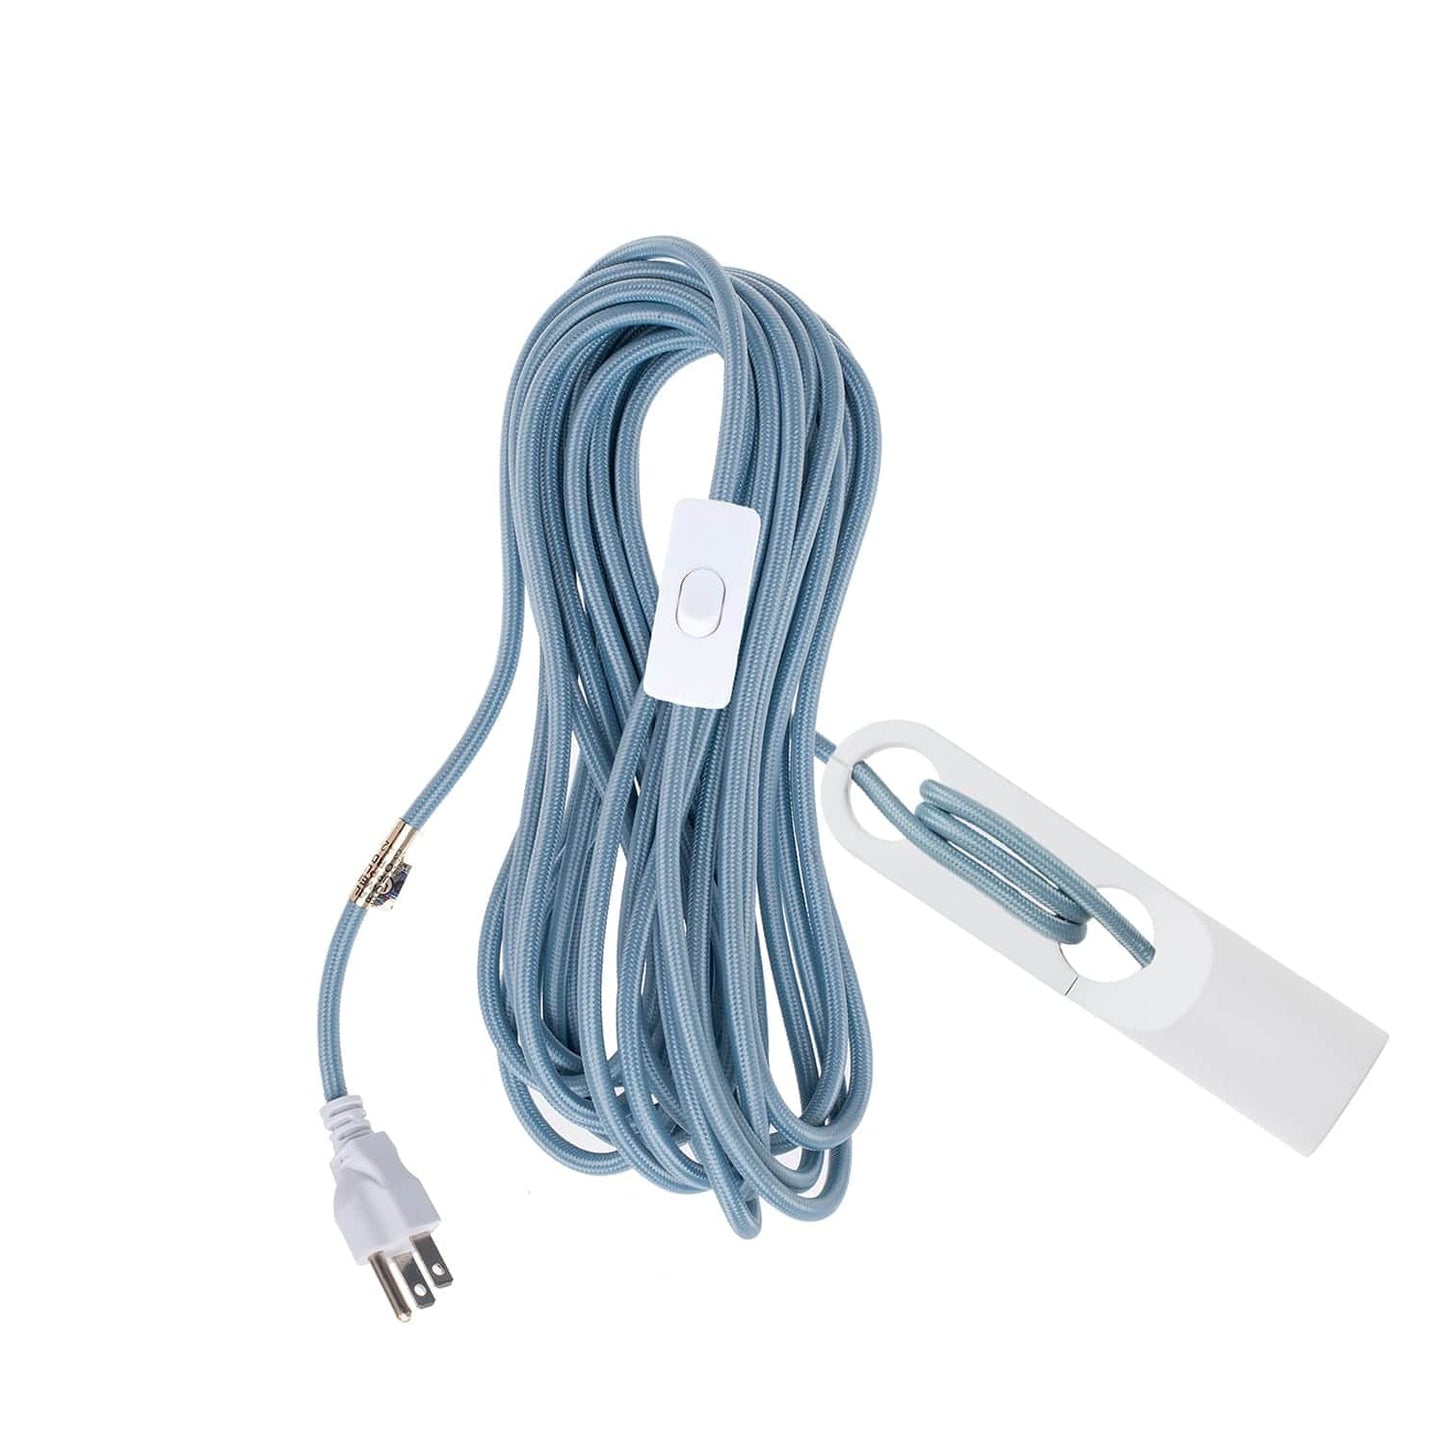 Wrap White Chroma Plug-In Cord Set